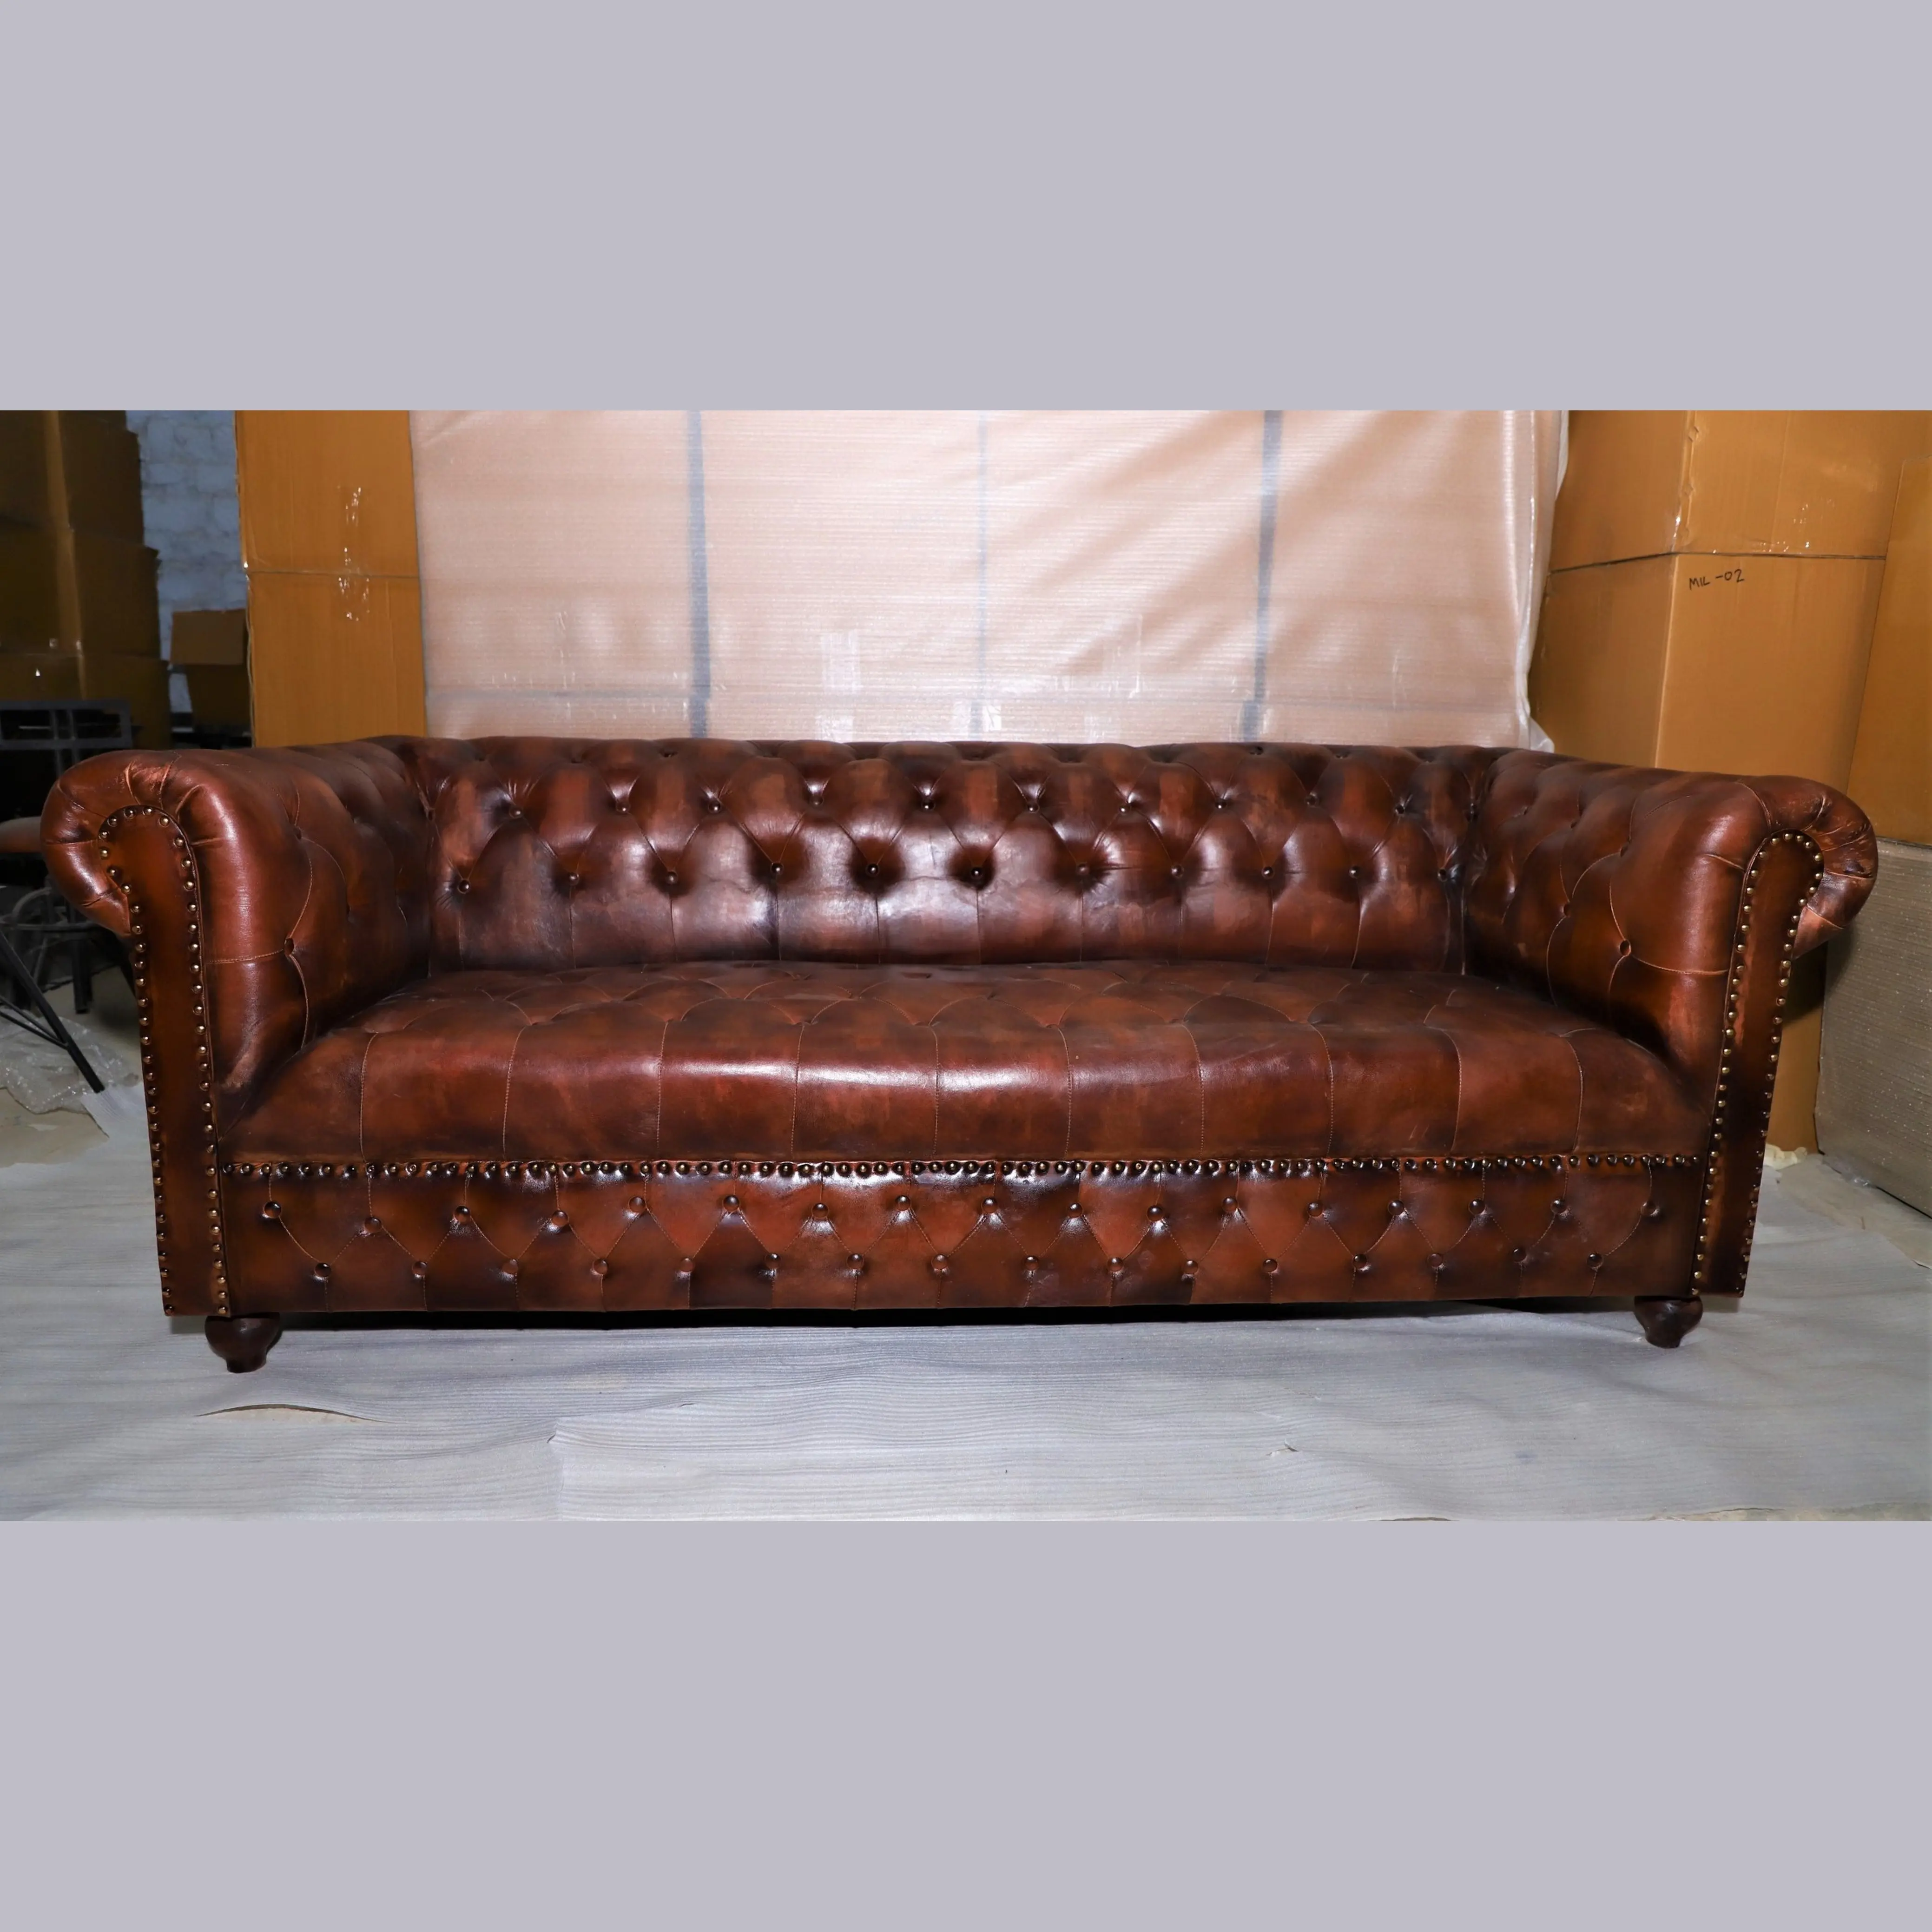 Оригинальный кожаный диван CHESTERFIELD для гостиной, диван из натуральной кожи